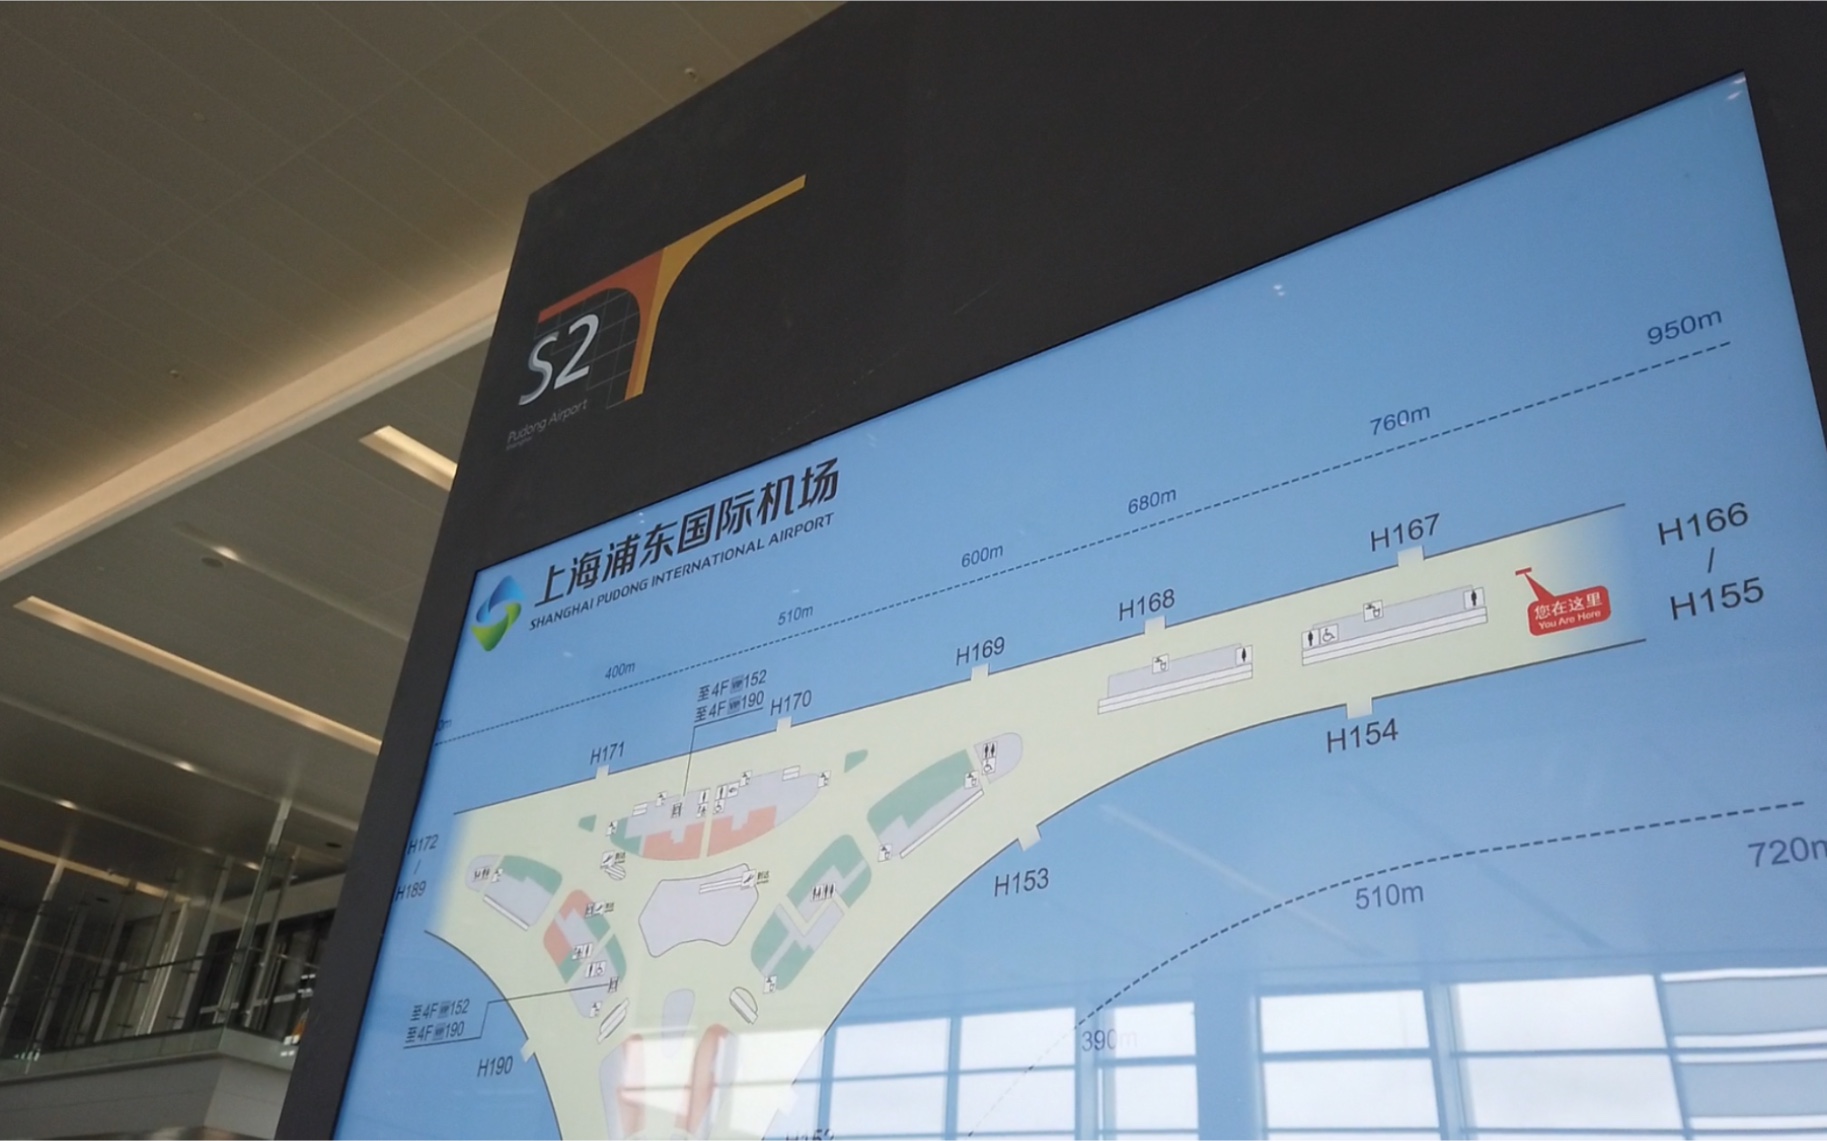 浦东机场地图 内部图片